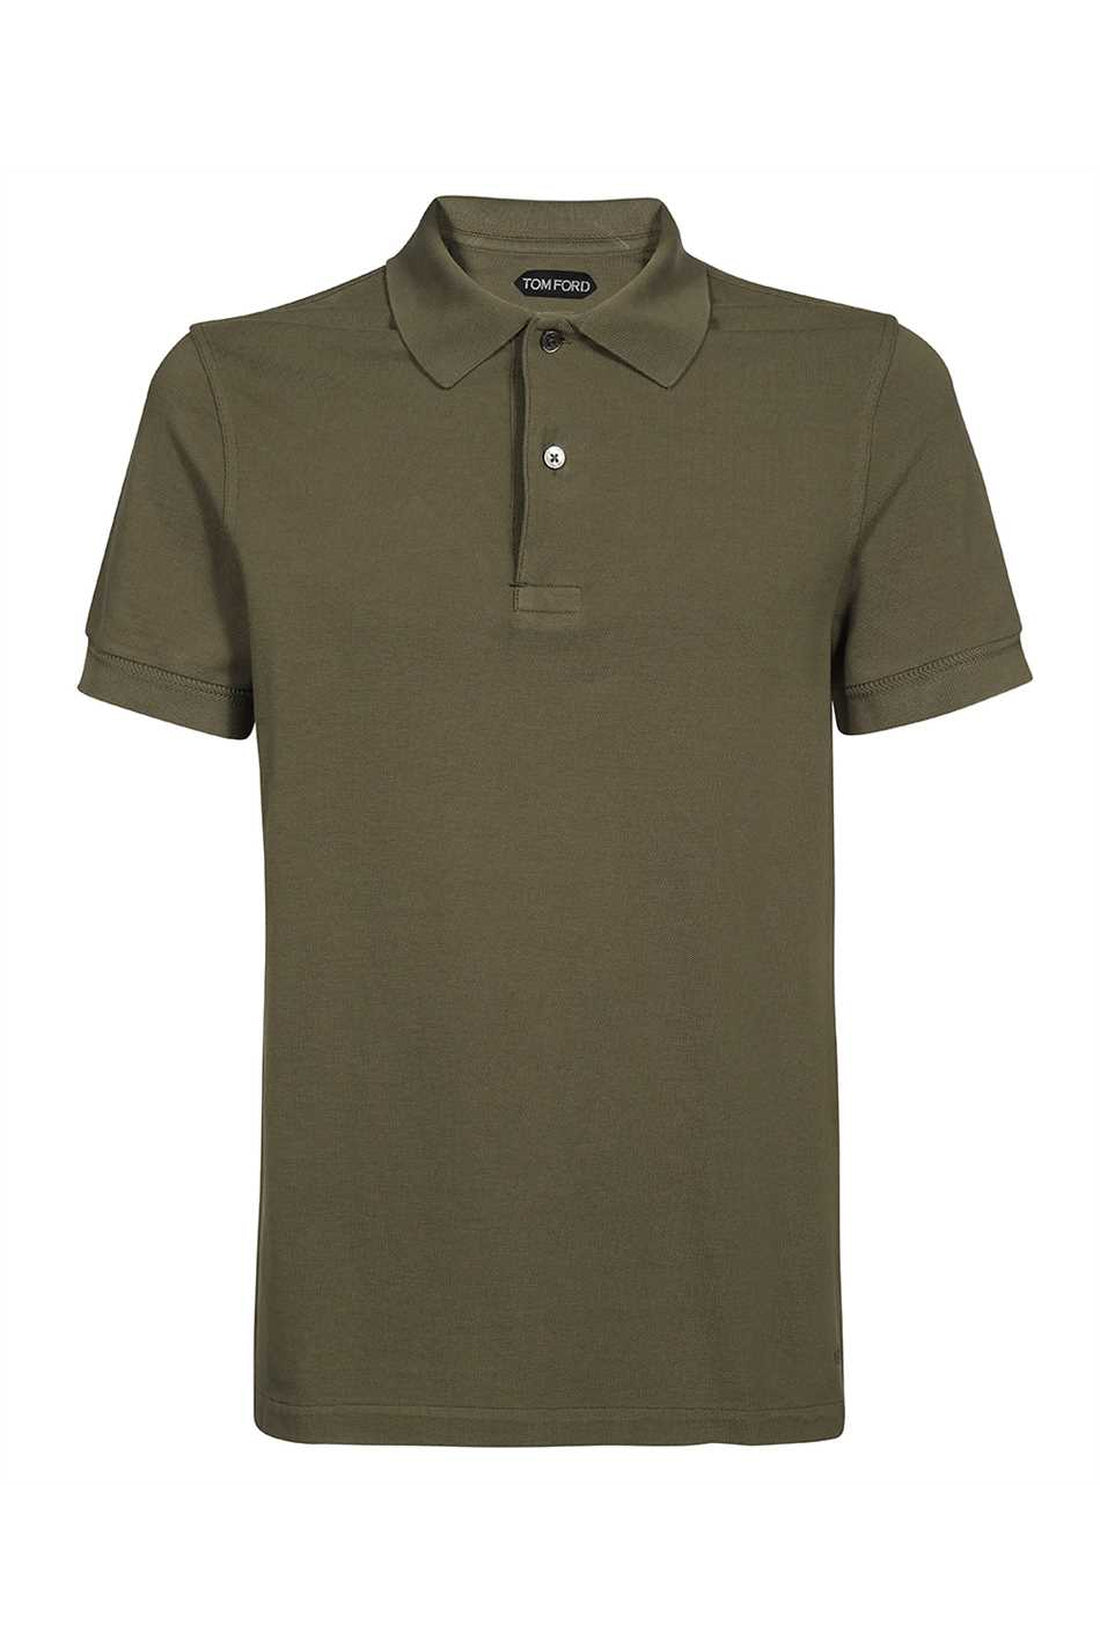 Tom Ford-OUTLET-SALE-Cotton piqué polo shirt-ARCHIVIST